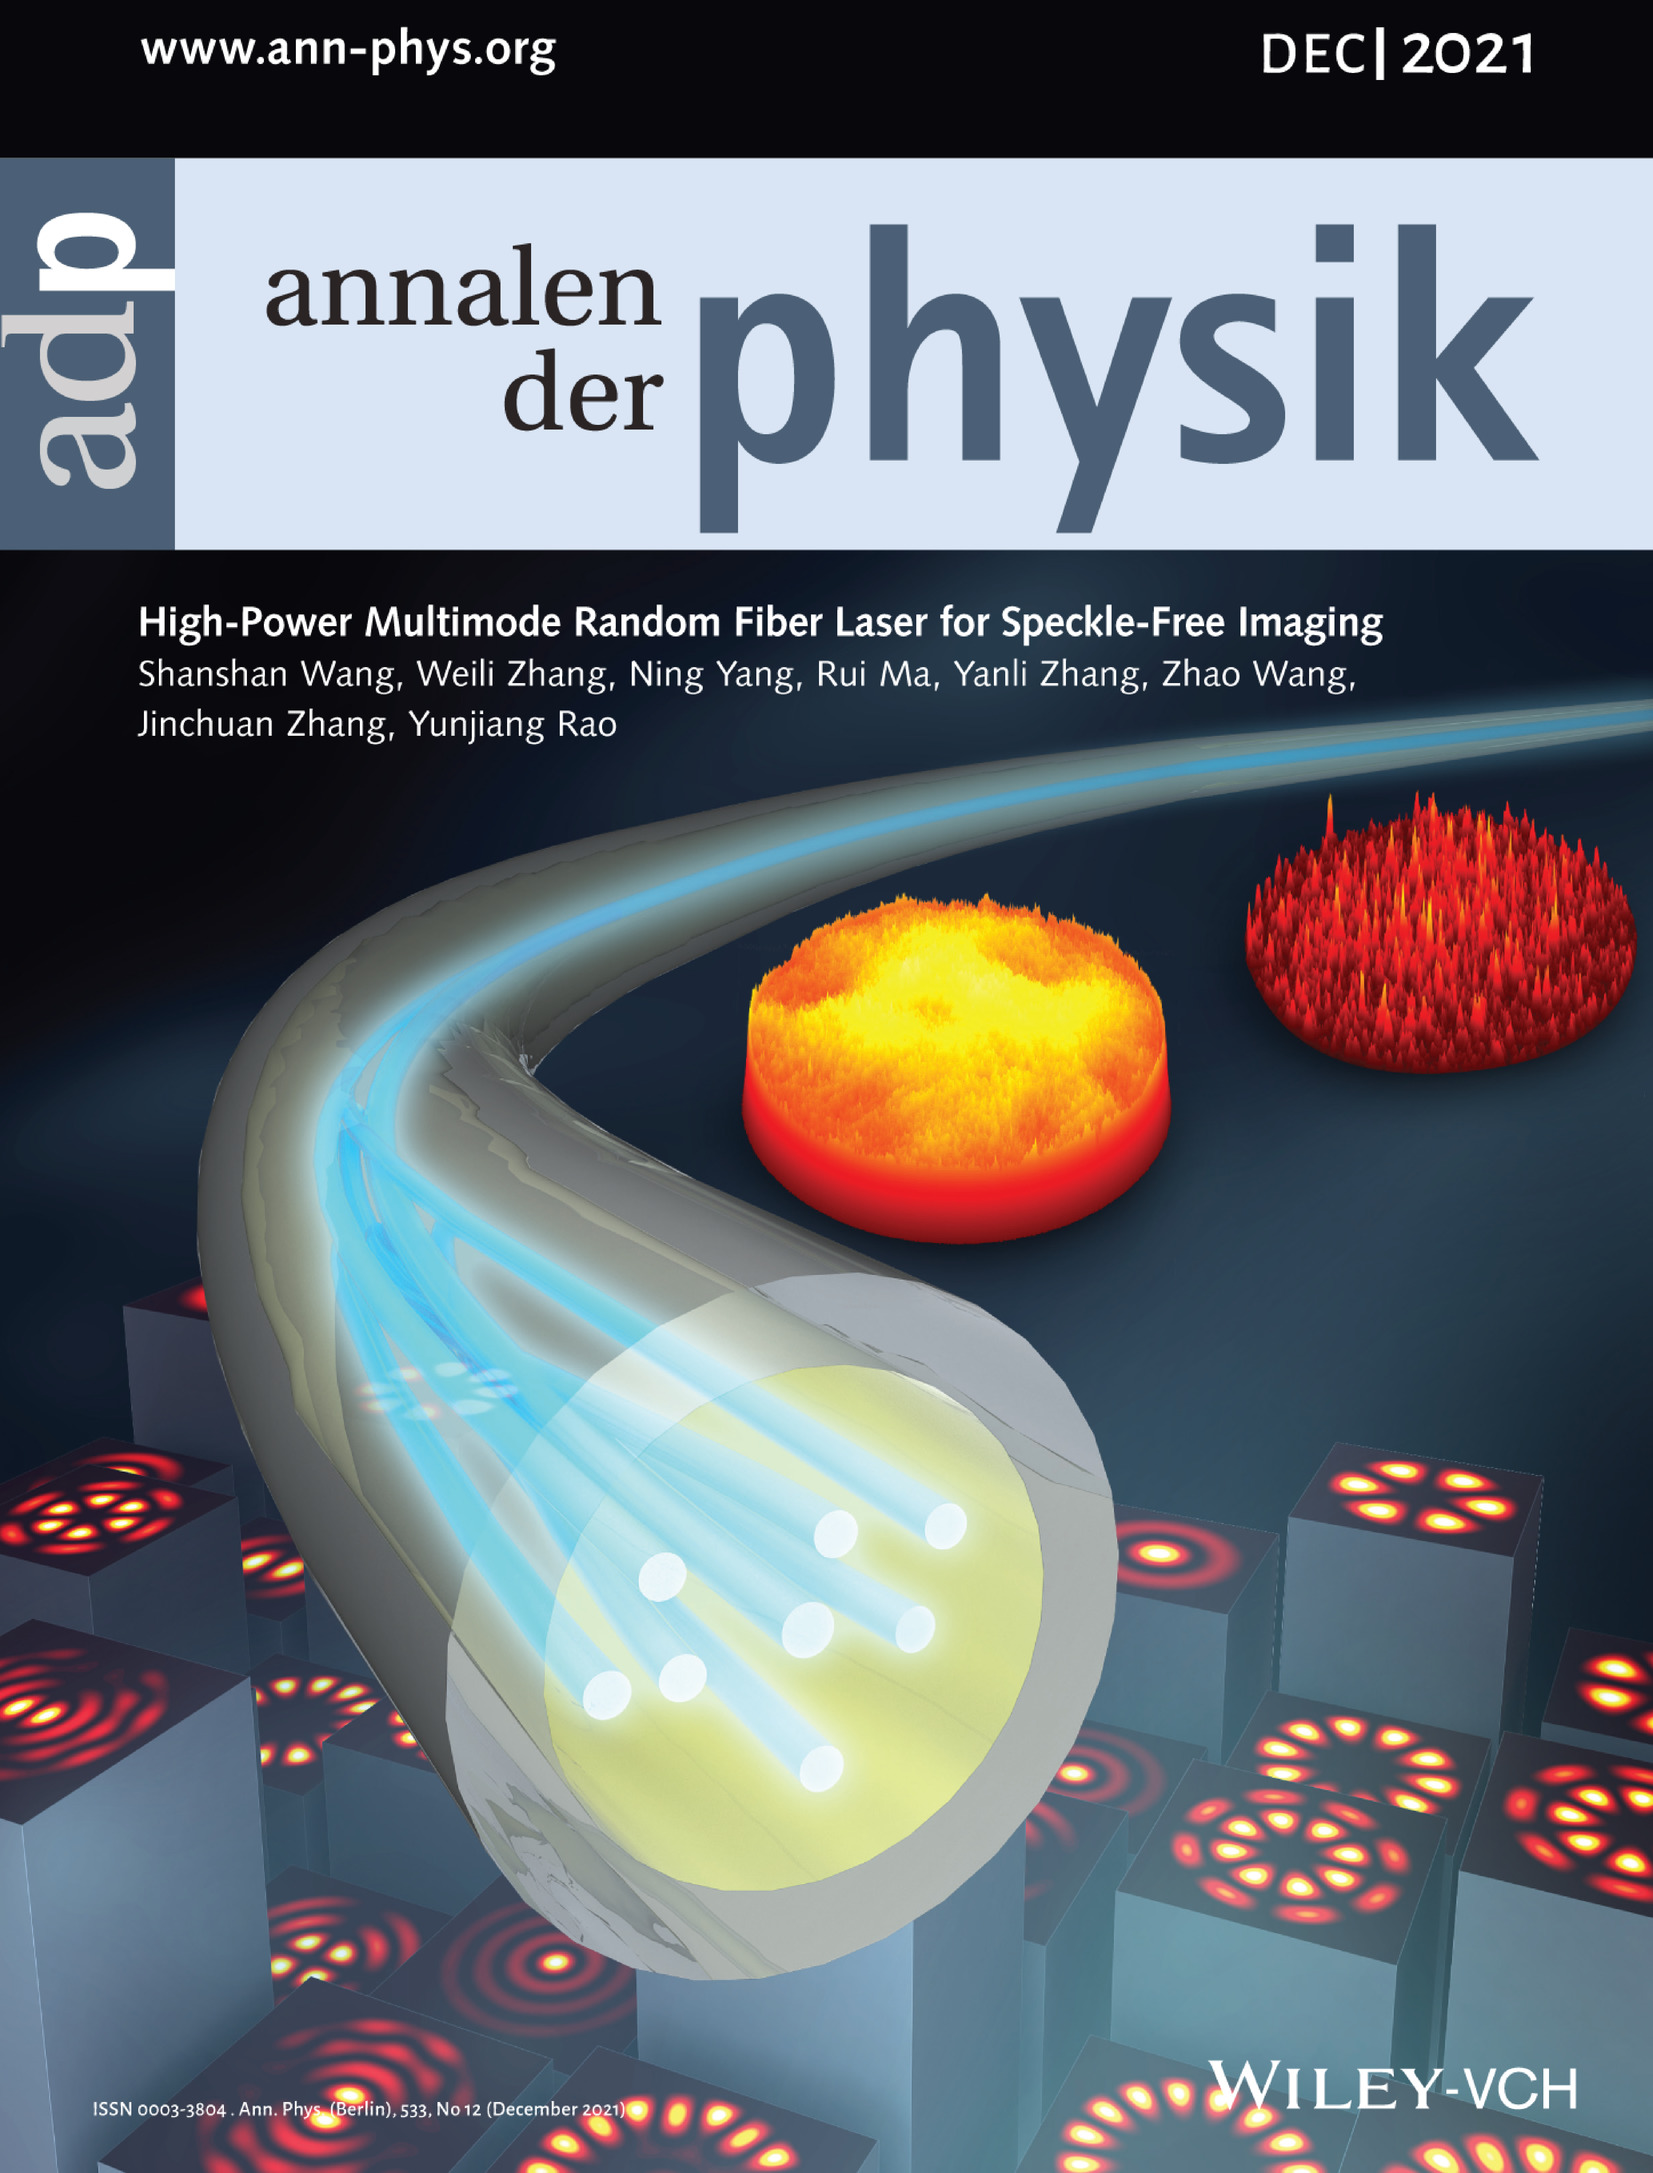 High‐Power Multimode Random Fiber Laser for Speckle‐Free Imaging (Ann. Phys. 12/2021)